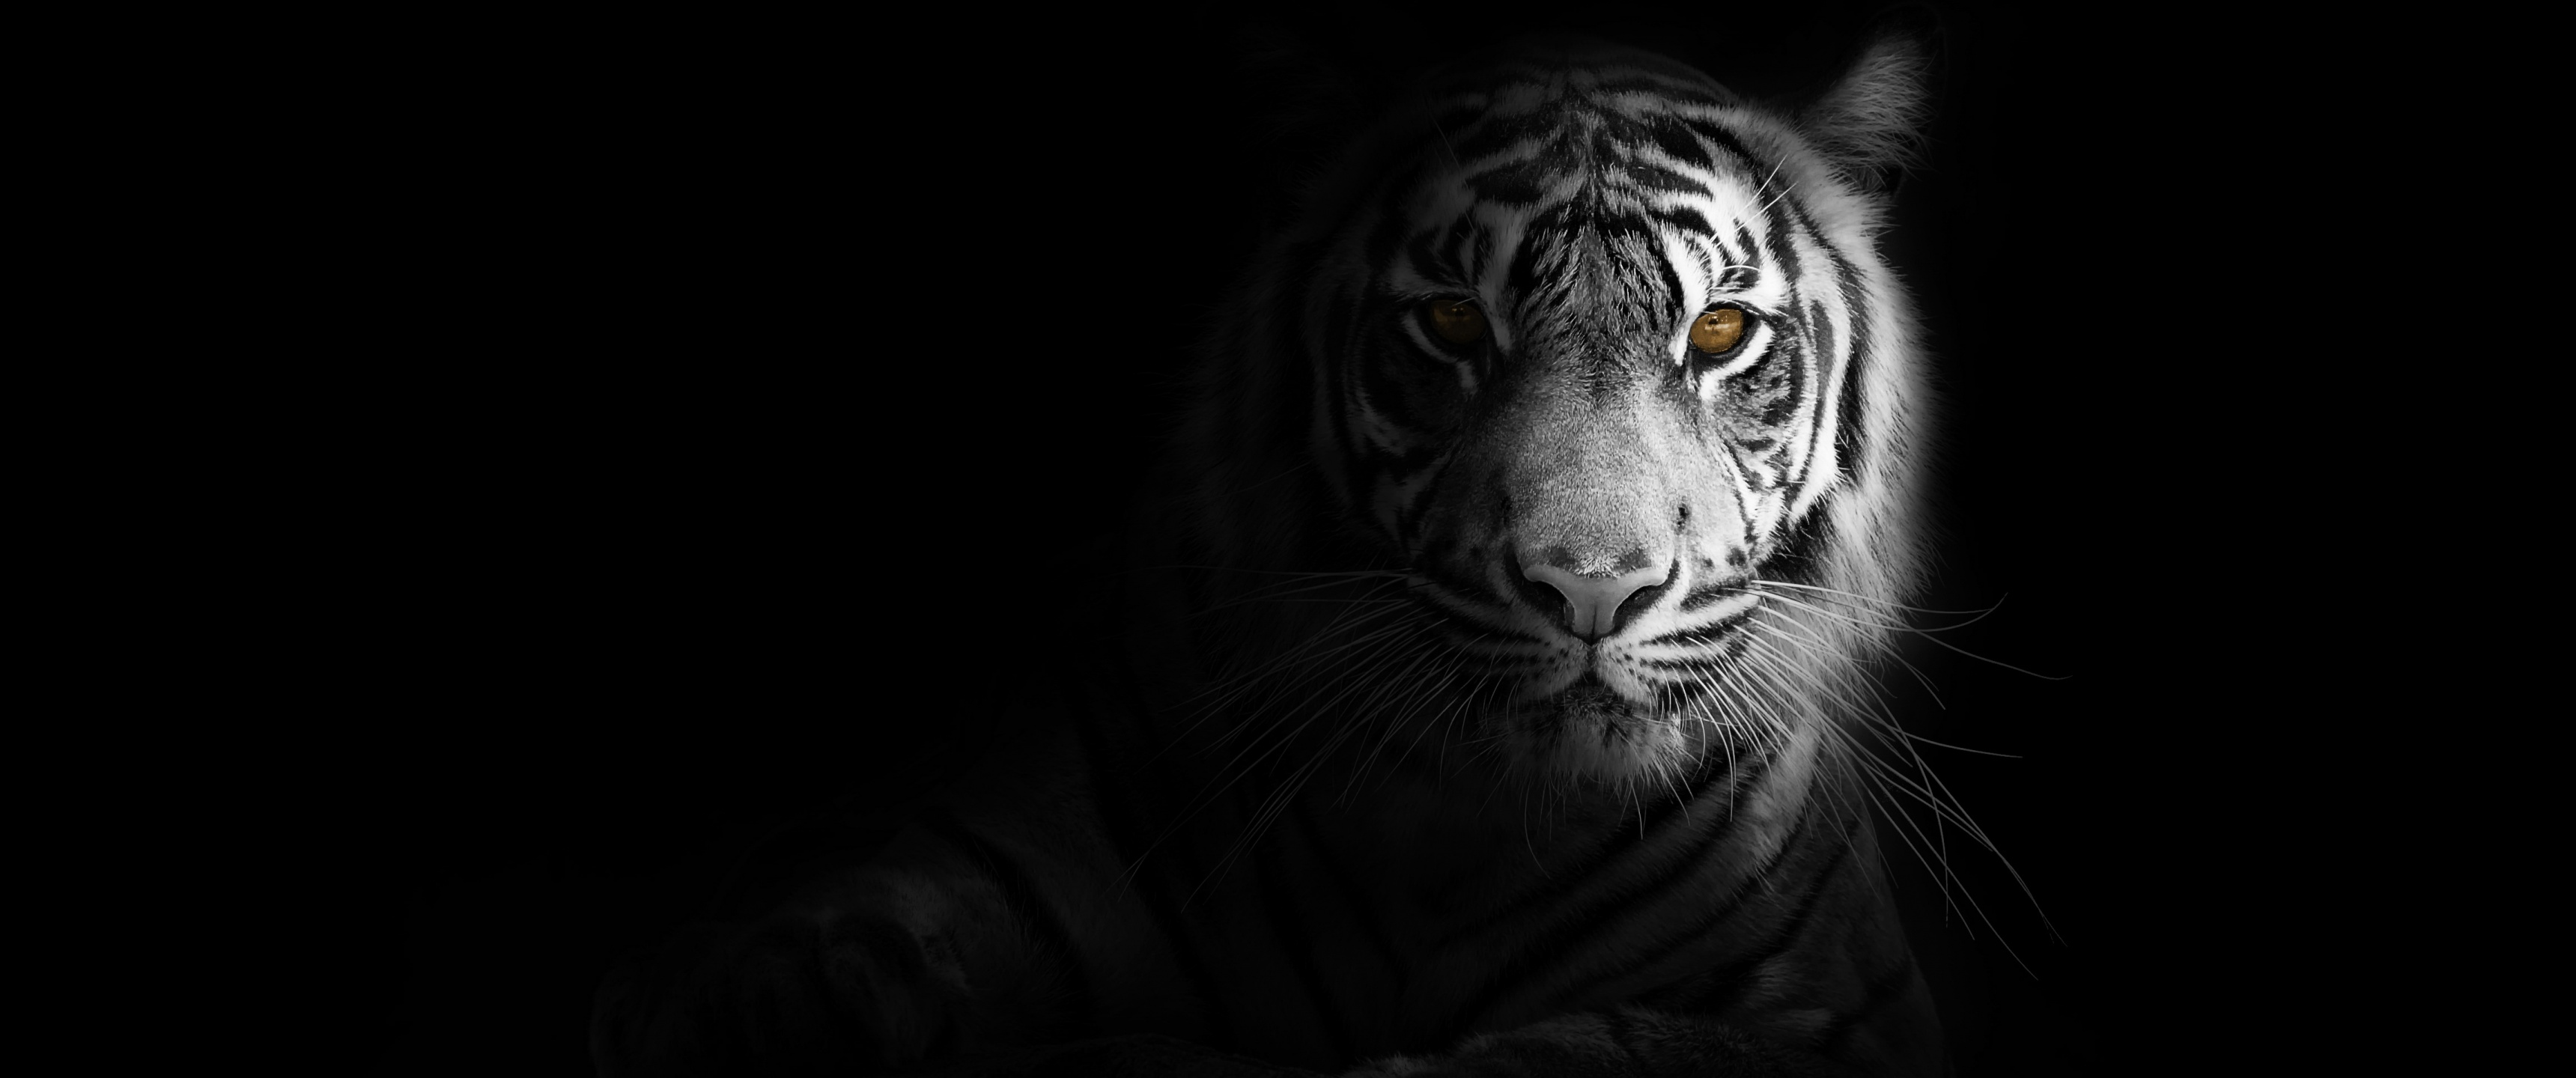 White tiger Wallpaper 4K, Bengal Tiger, Animals, #1526